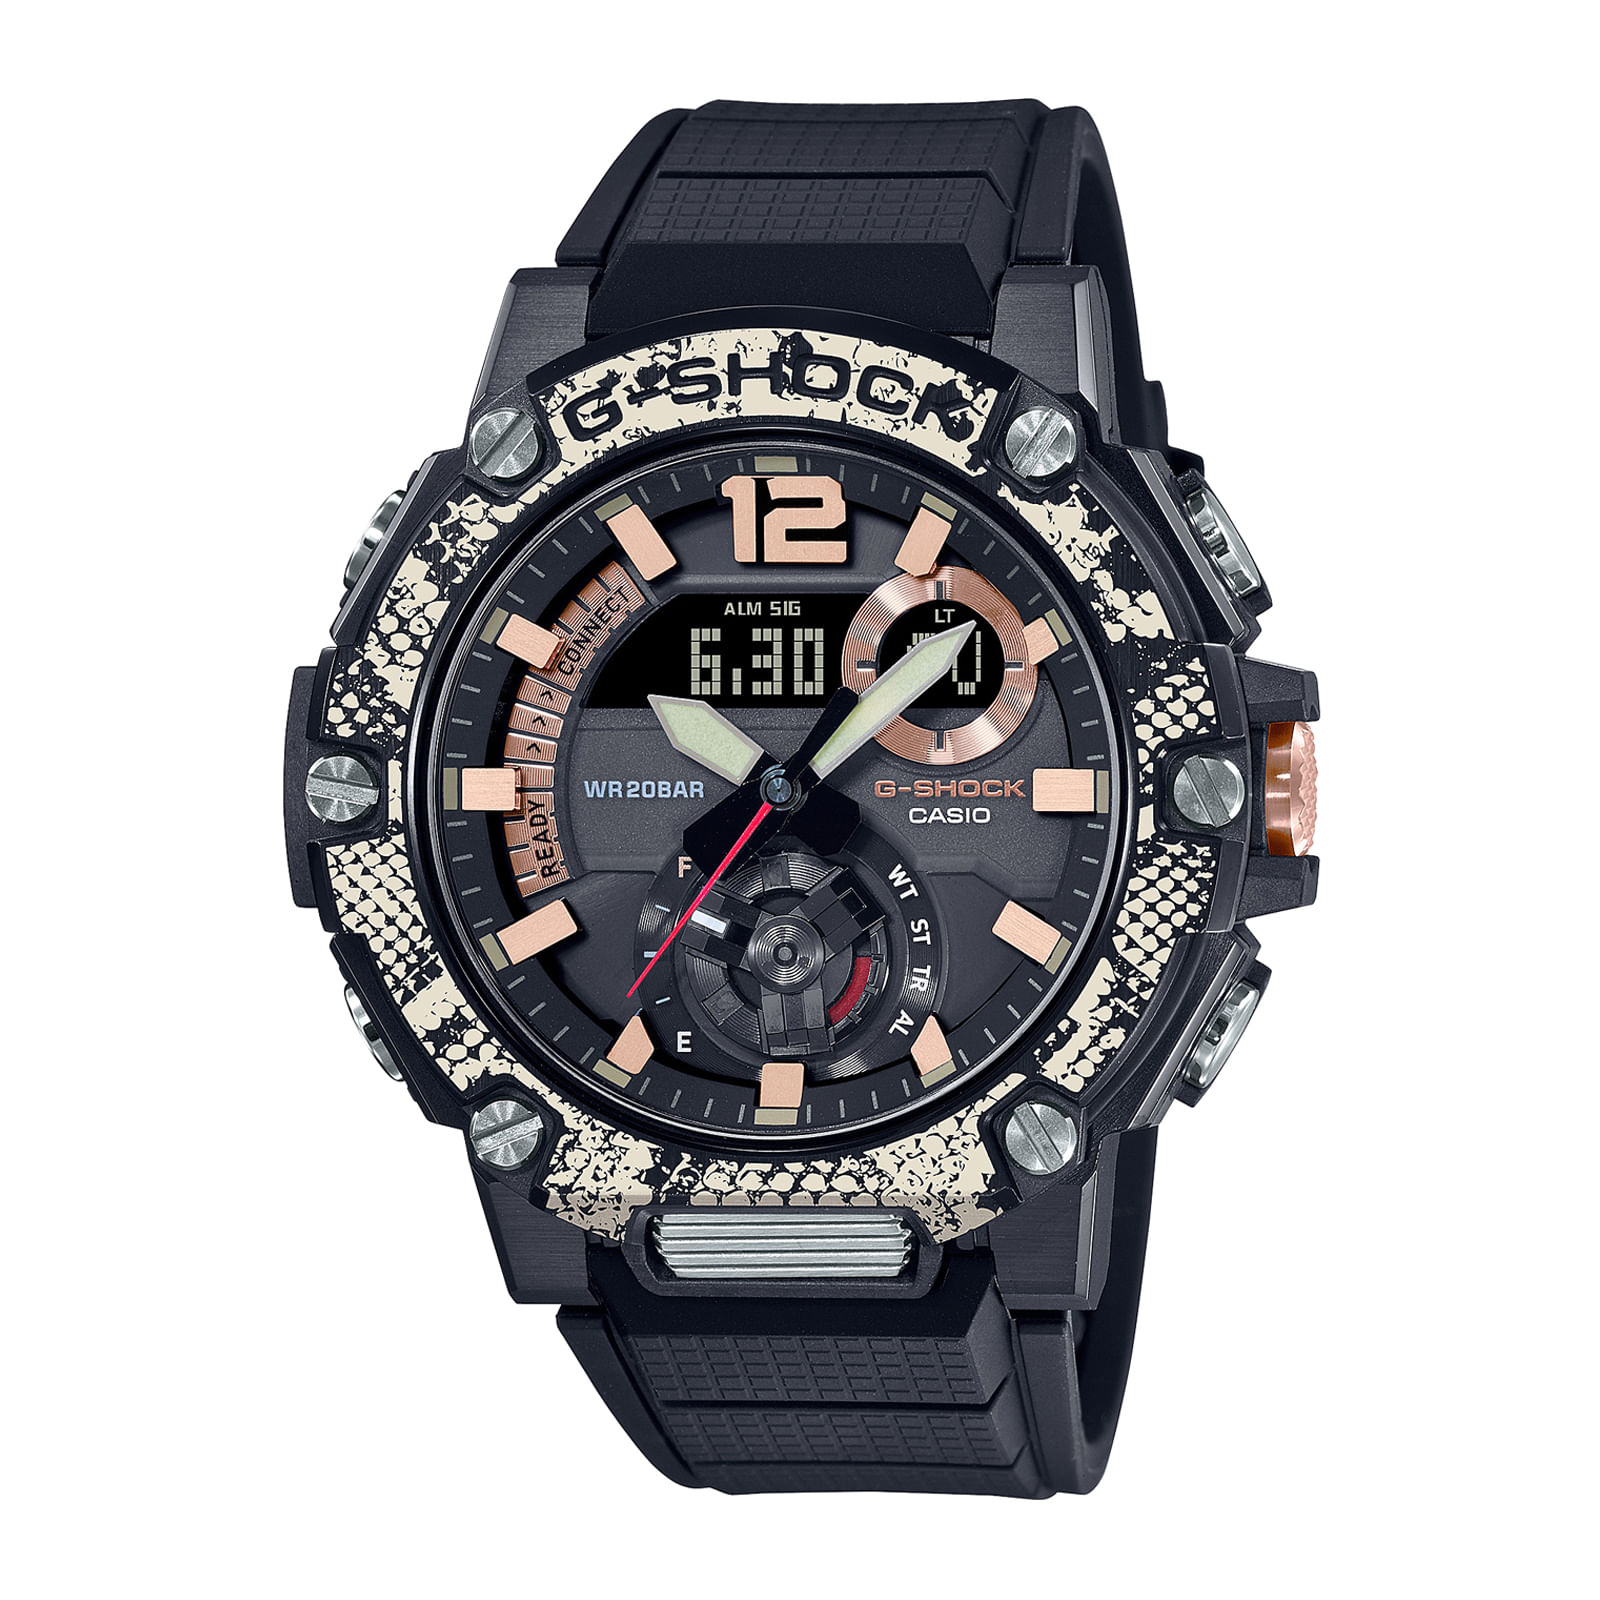 Reloj G-SHOCK GST-B300WLP-1A Resina/Acero Hombre Negro